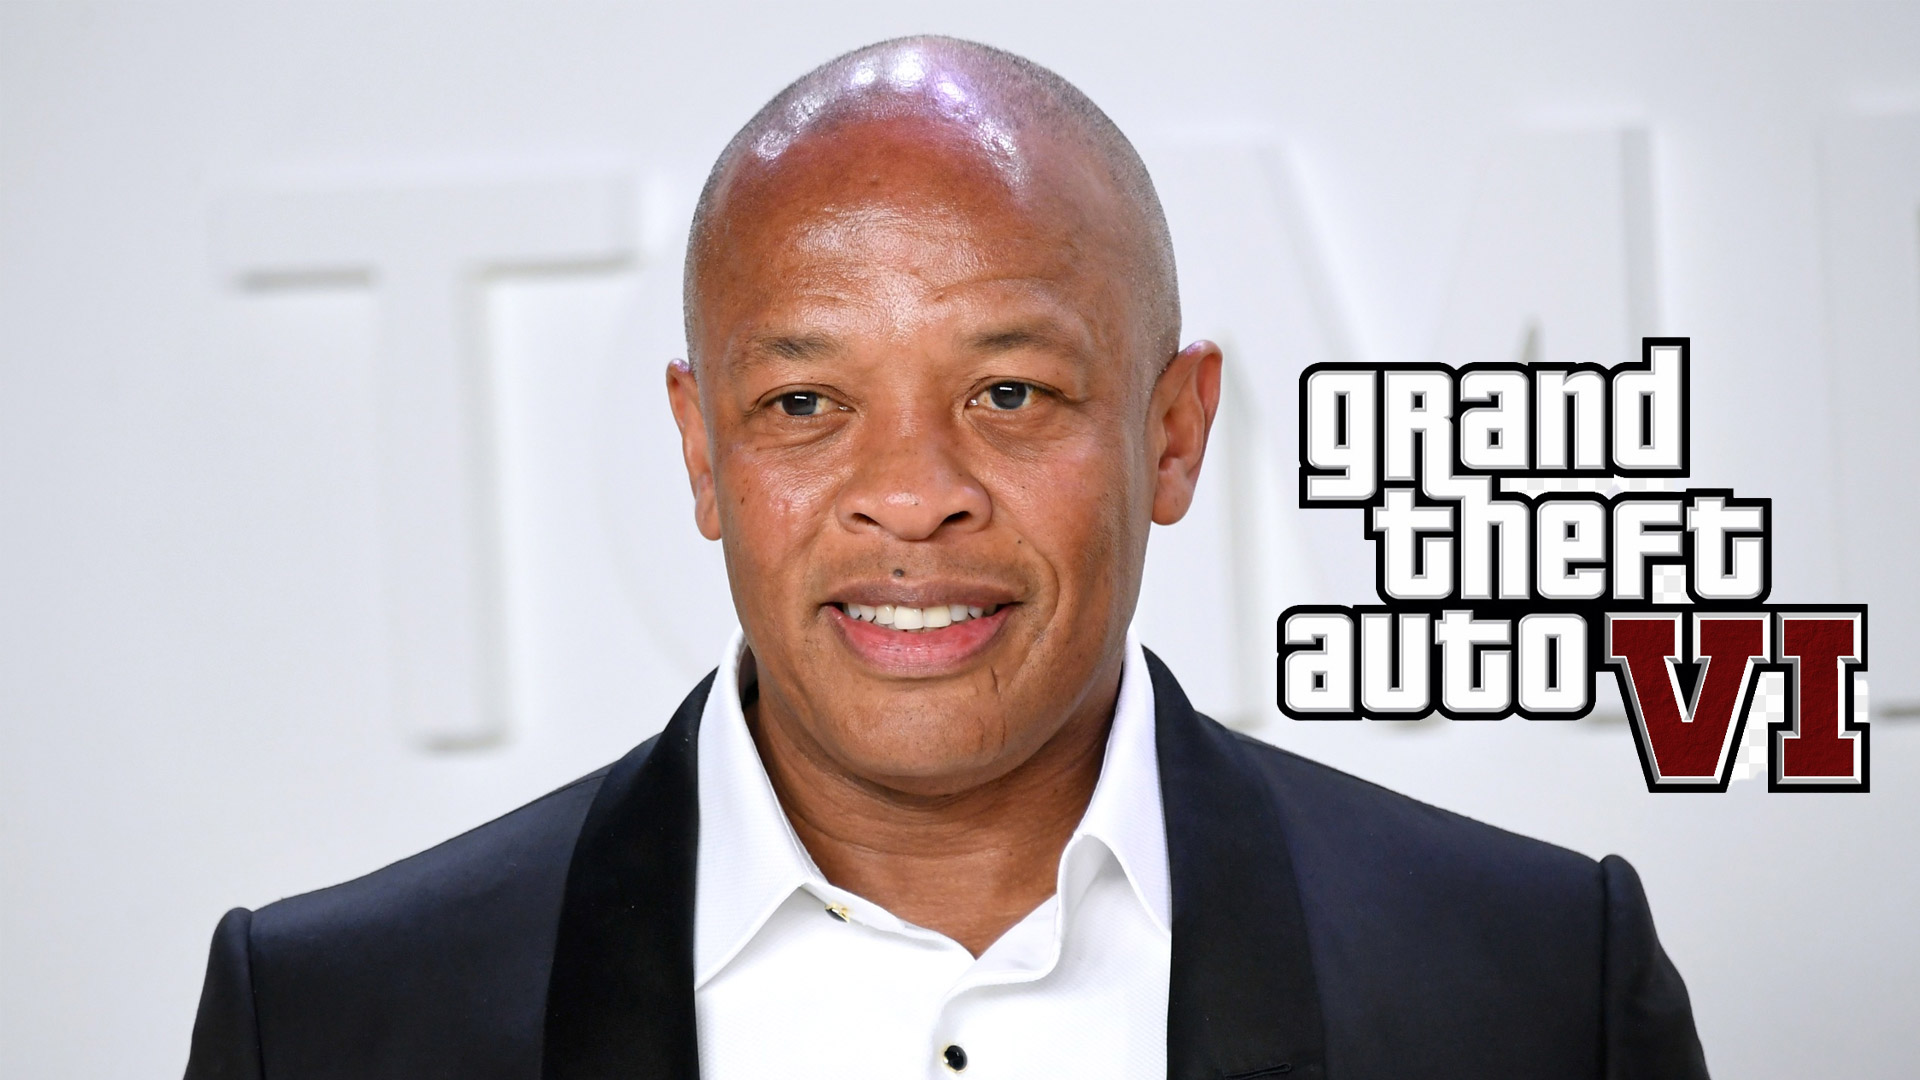 شایعه: Dr. Dre در حال کار روی موسیقی بازی GTA 6 است